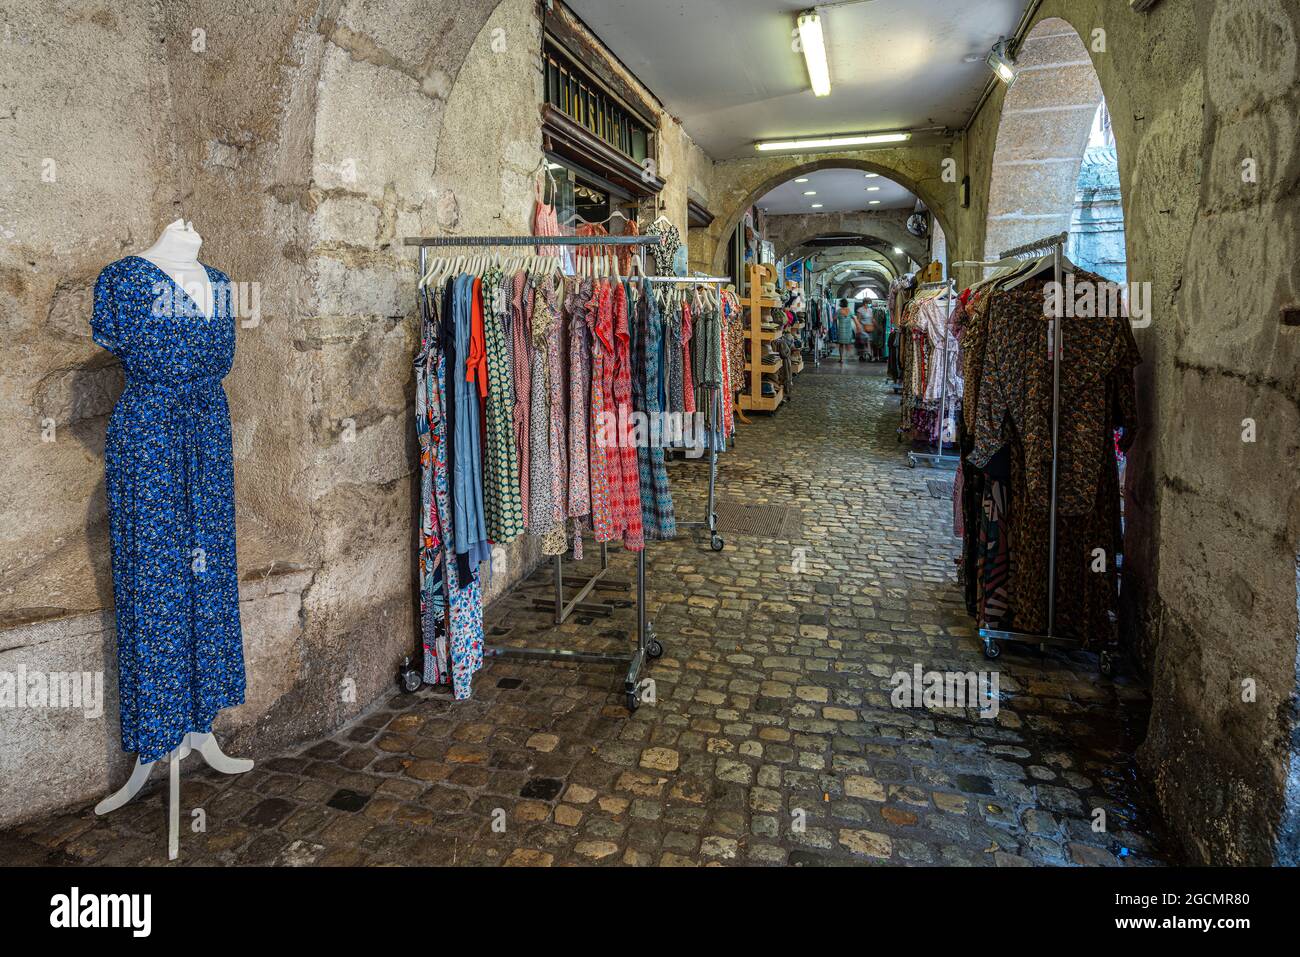 Negozio di abbigliamento all'aperto durante il mercato tradizionale nell'antica città di Annecy. Annecy, dipartimento della Savoia, regione Auvergne-Rhône-Alpes, Francia Foto Stock